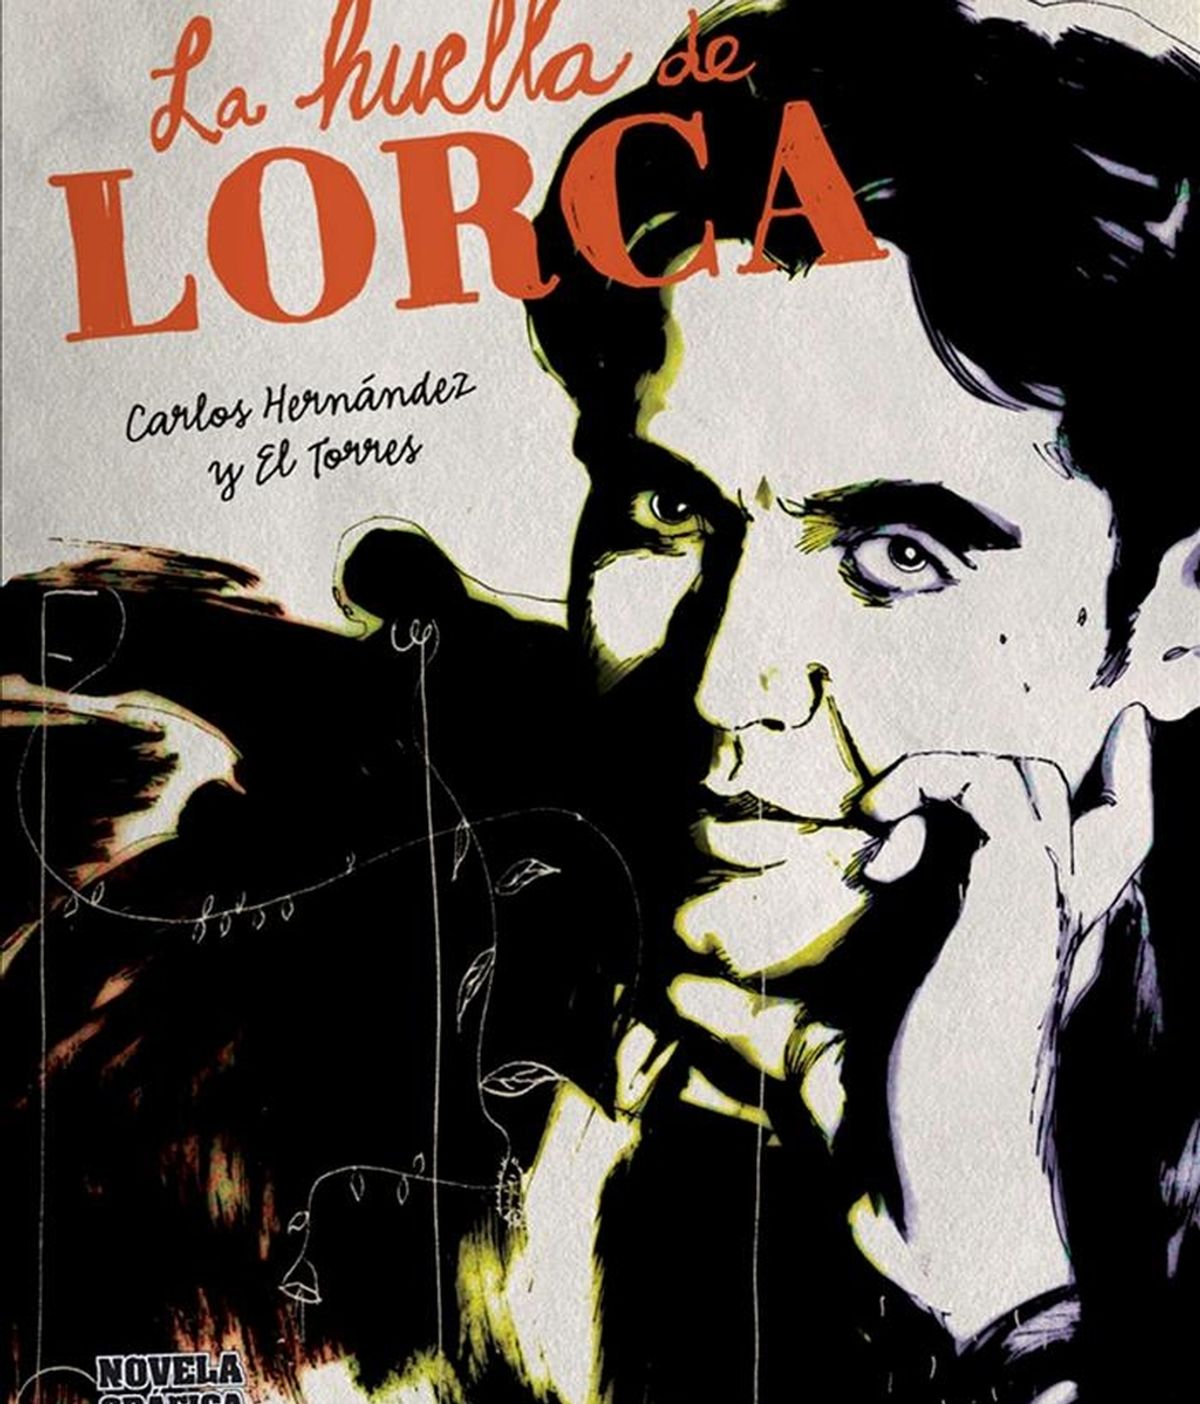 Portada de "La huella de Lorca", del dibujante granadino Carlos Hernández y el guionista "El Torres", la primera novela gráfica dedicada a Federico García Lorca, que relata, mediante el cómic, diferentes momentos de la vida del poeta a través de los ojos de las personas que le conocieron o compartieron con él parte de su vida. EFE